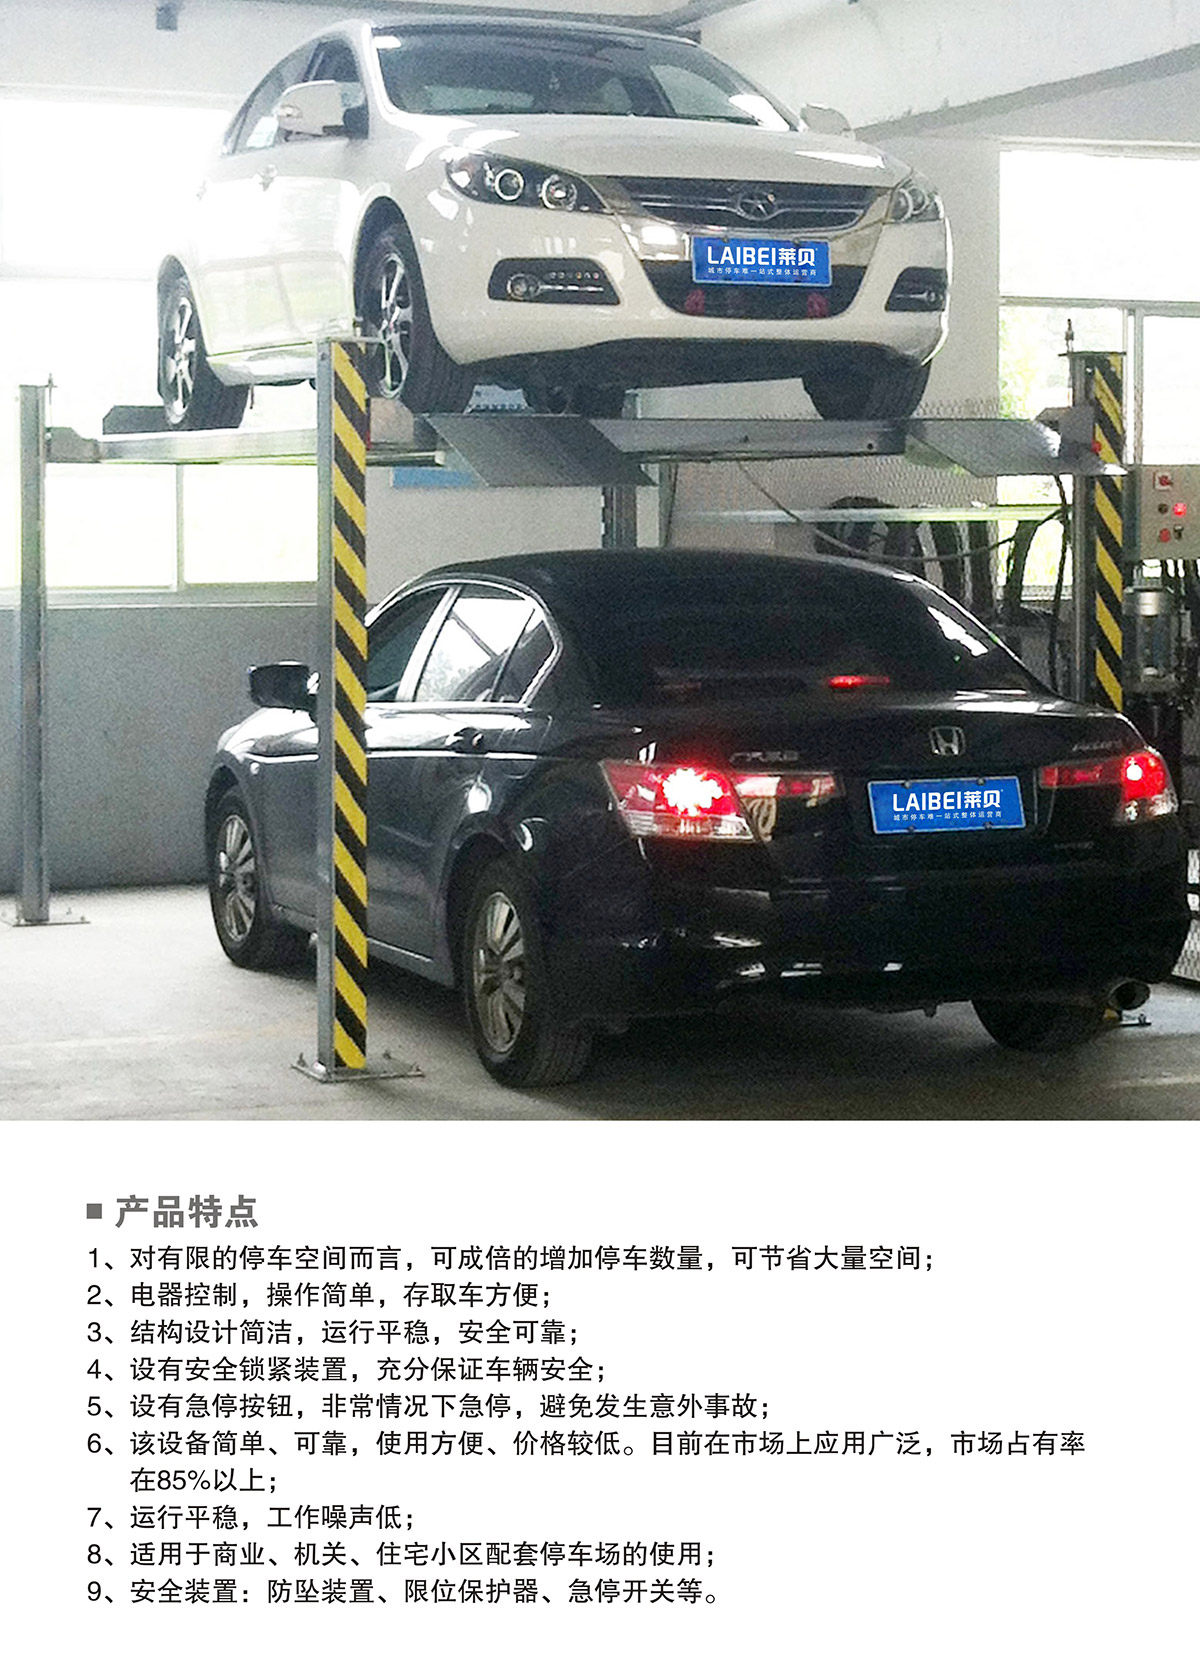 贵州PJS四柱简易升降立体停车库产品特点.jpg